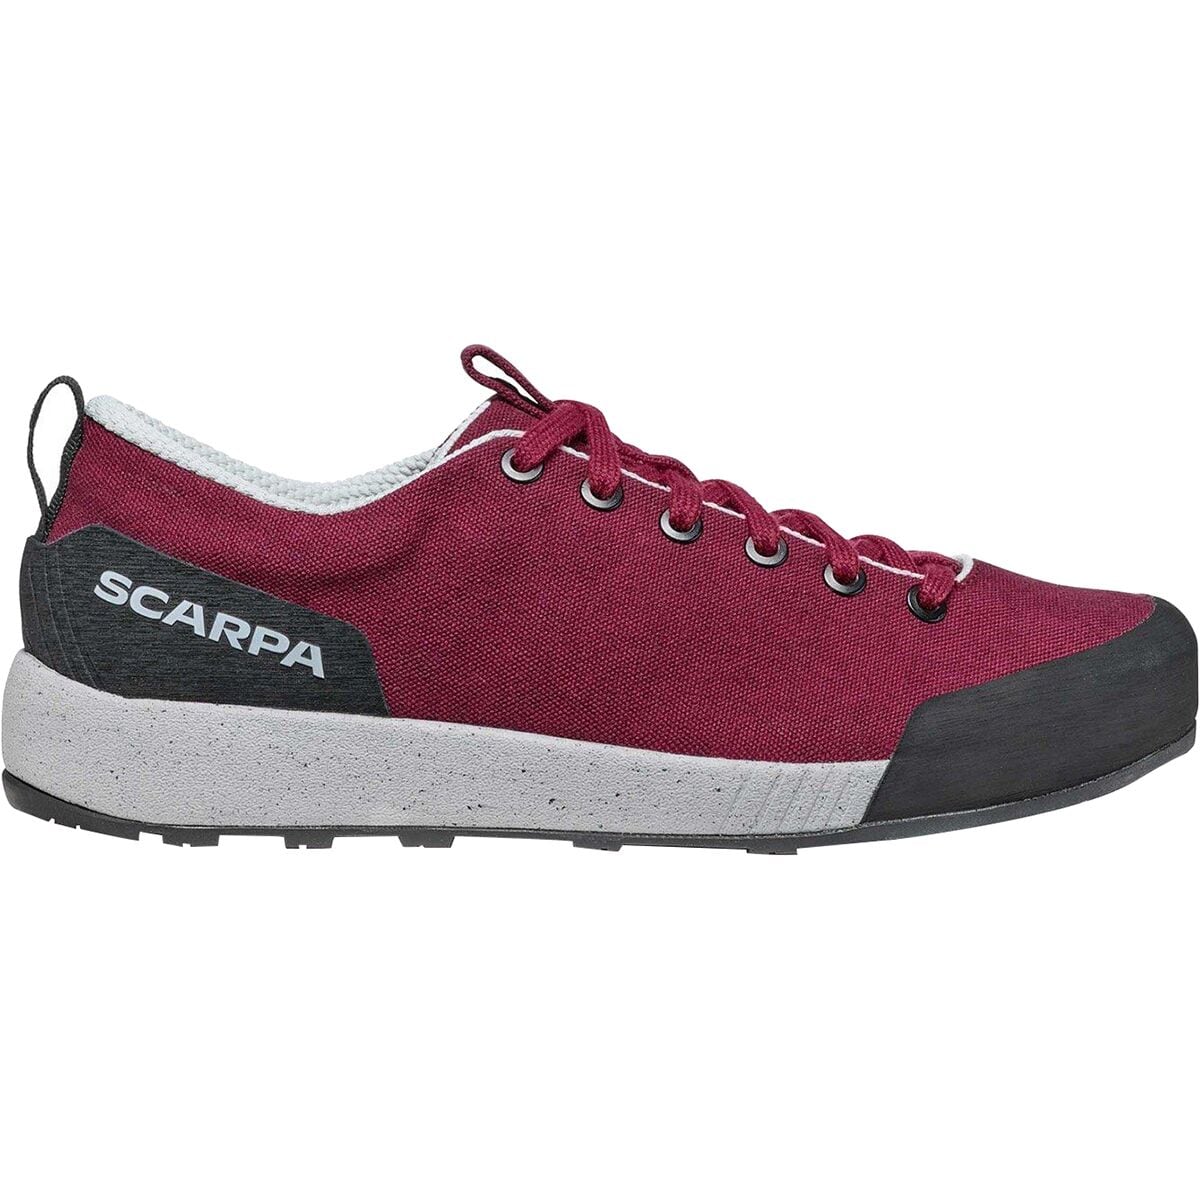 Scarpa Spirit Approach Shoe - Women's